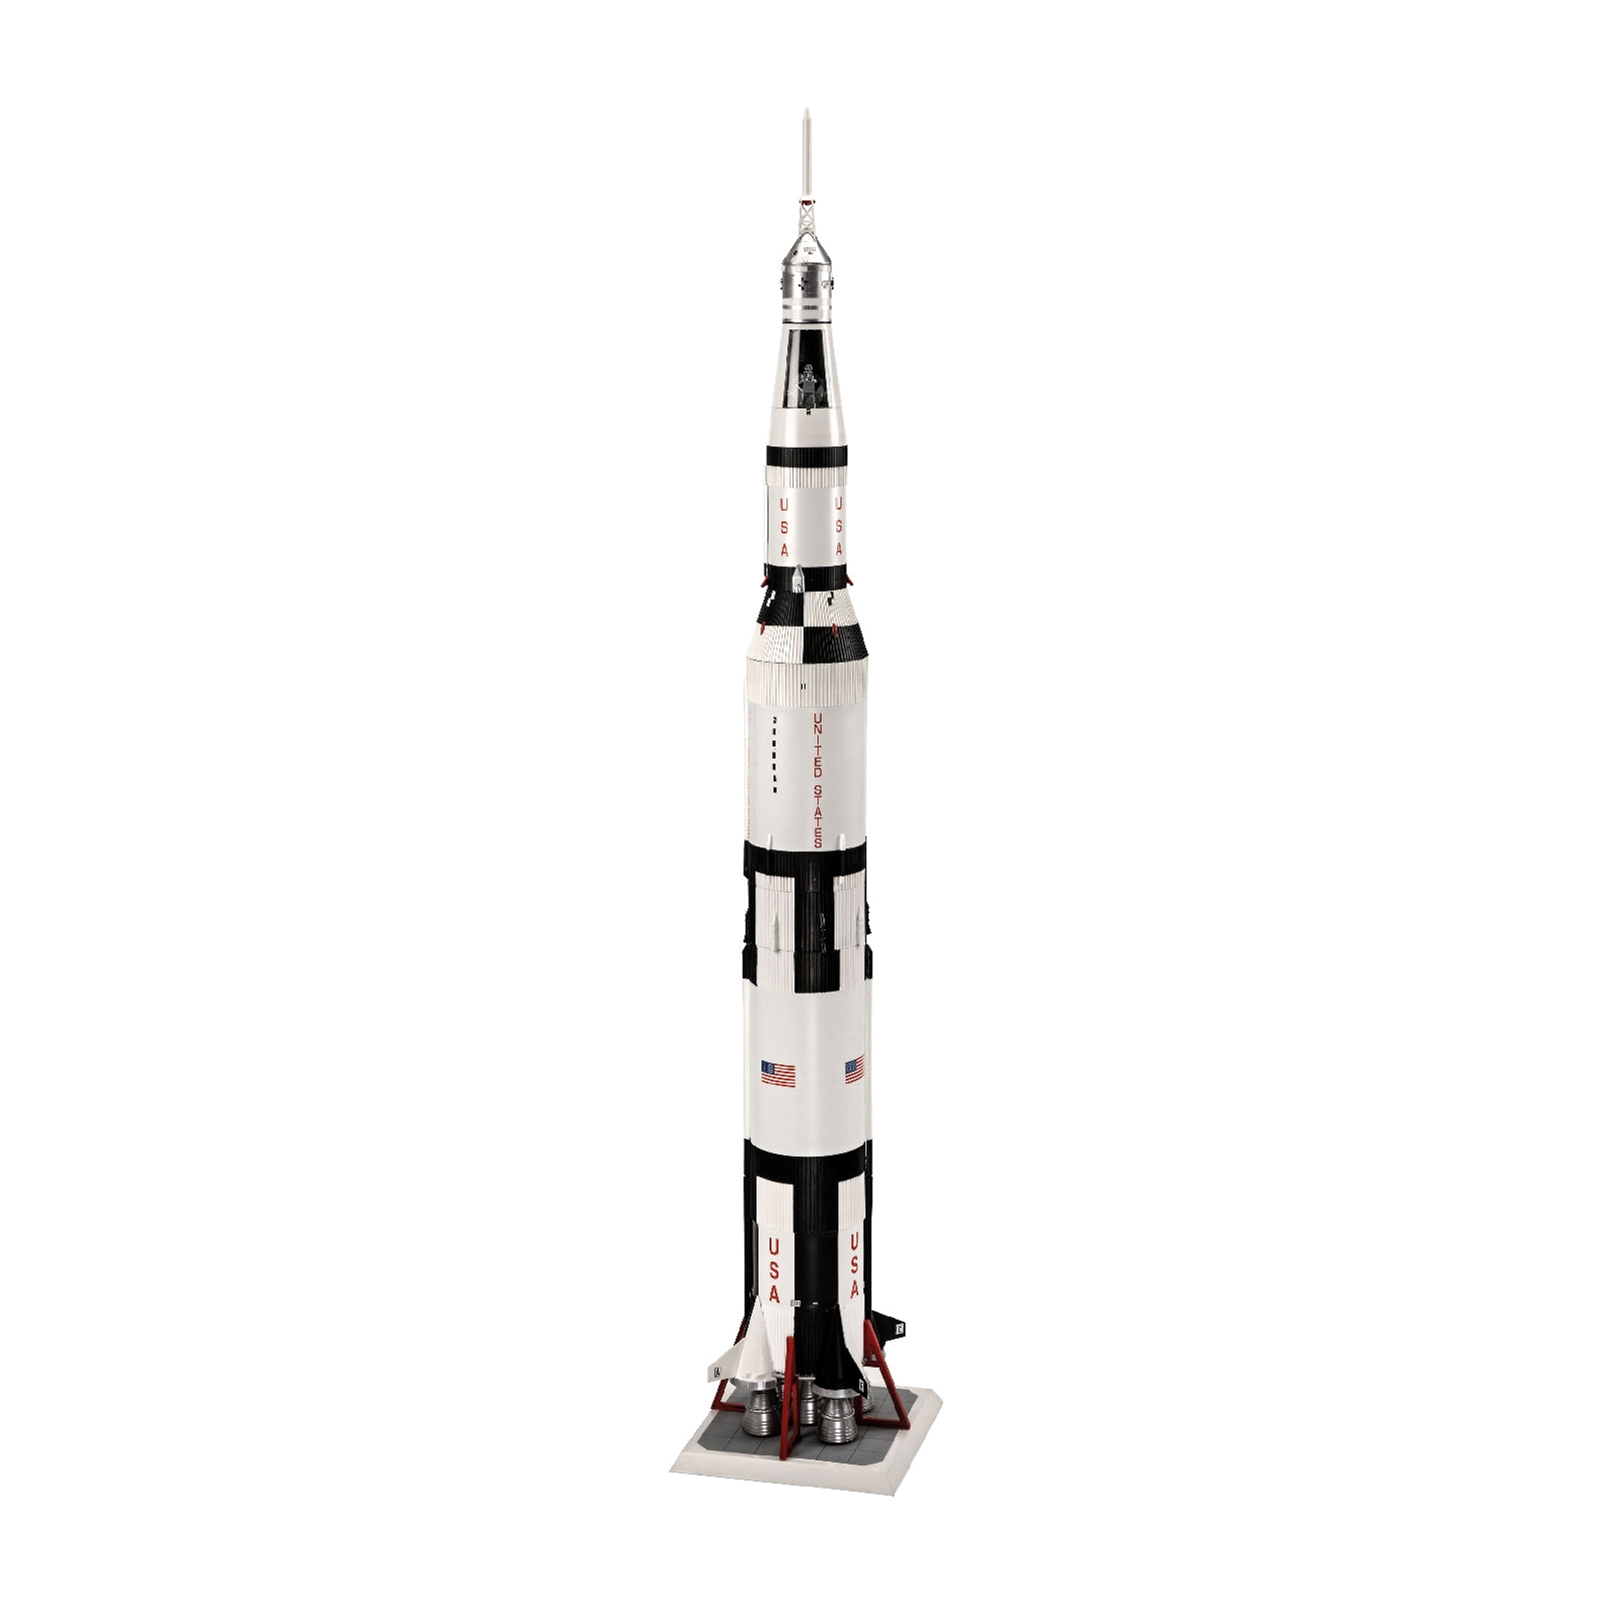 Сборная модель Revell Ракета-носитель СатурнV миссии Аполлон 11 уровень 5, 1:96 (RVL-03704) изображение 2